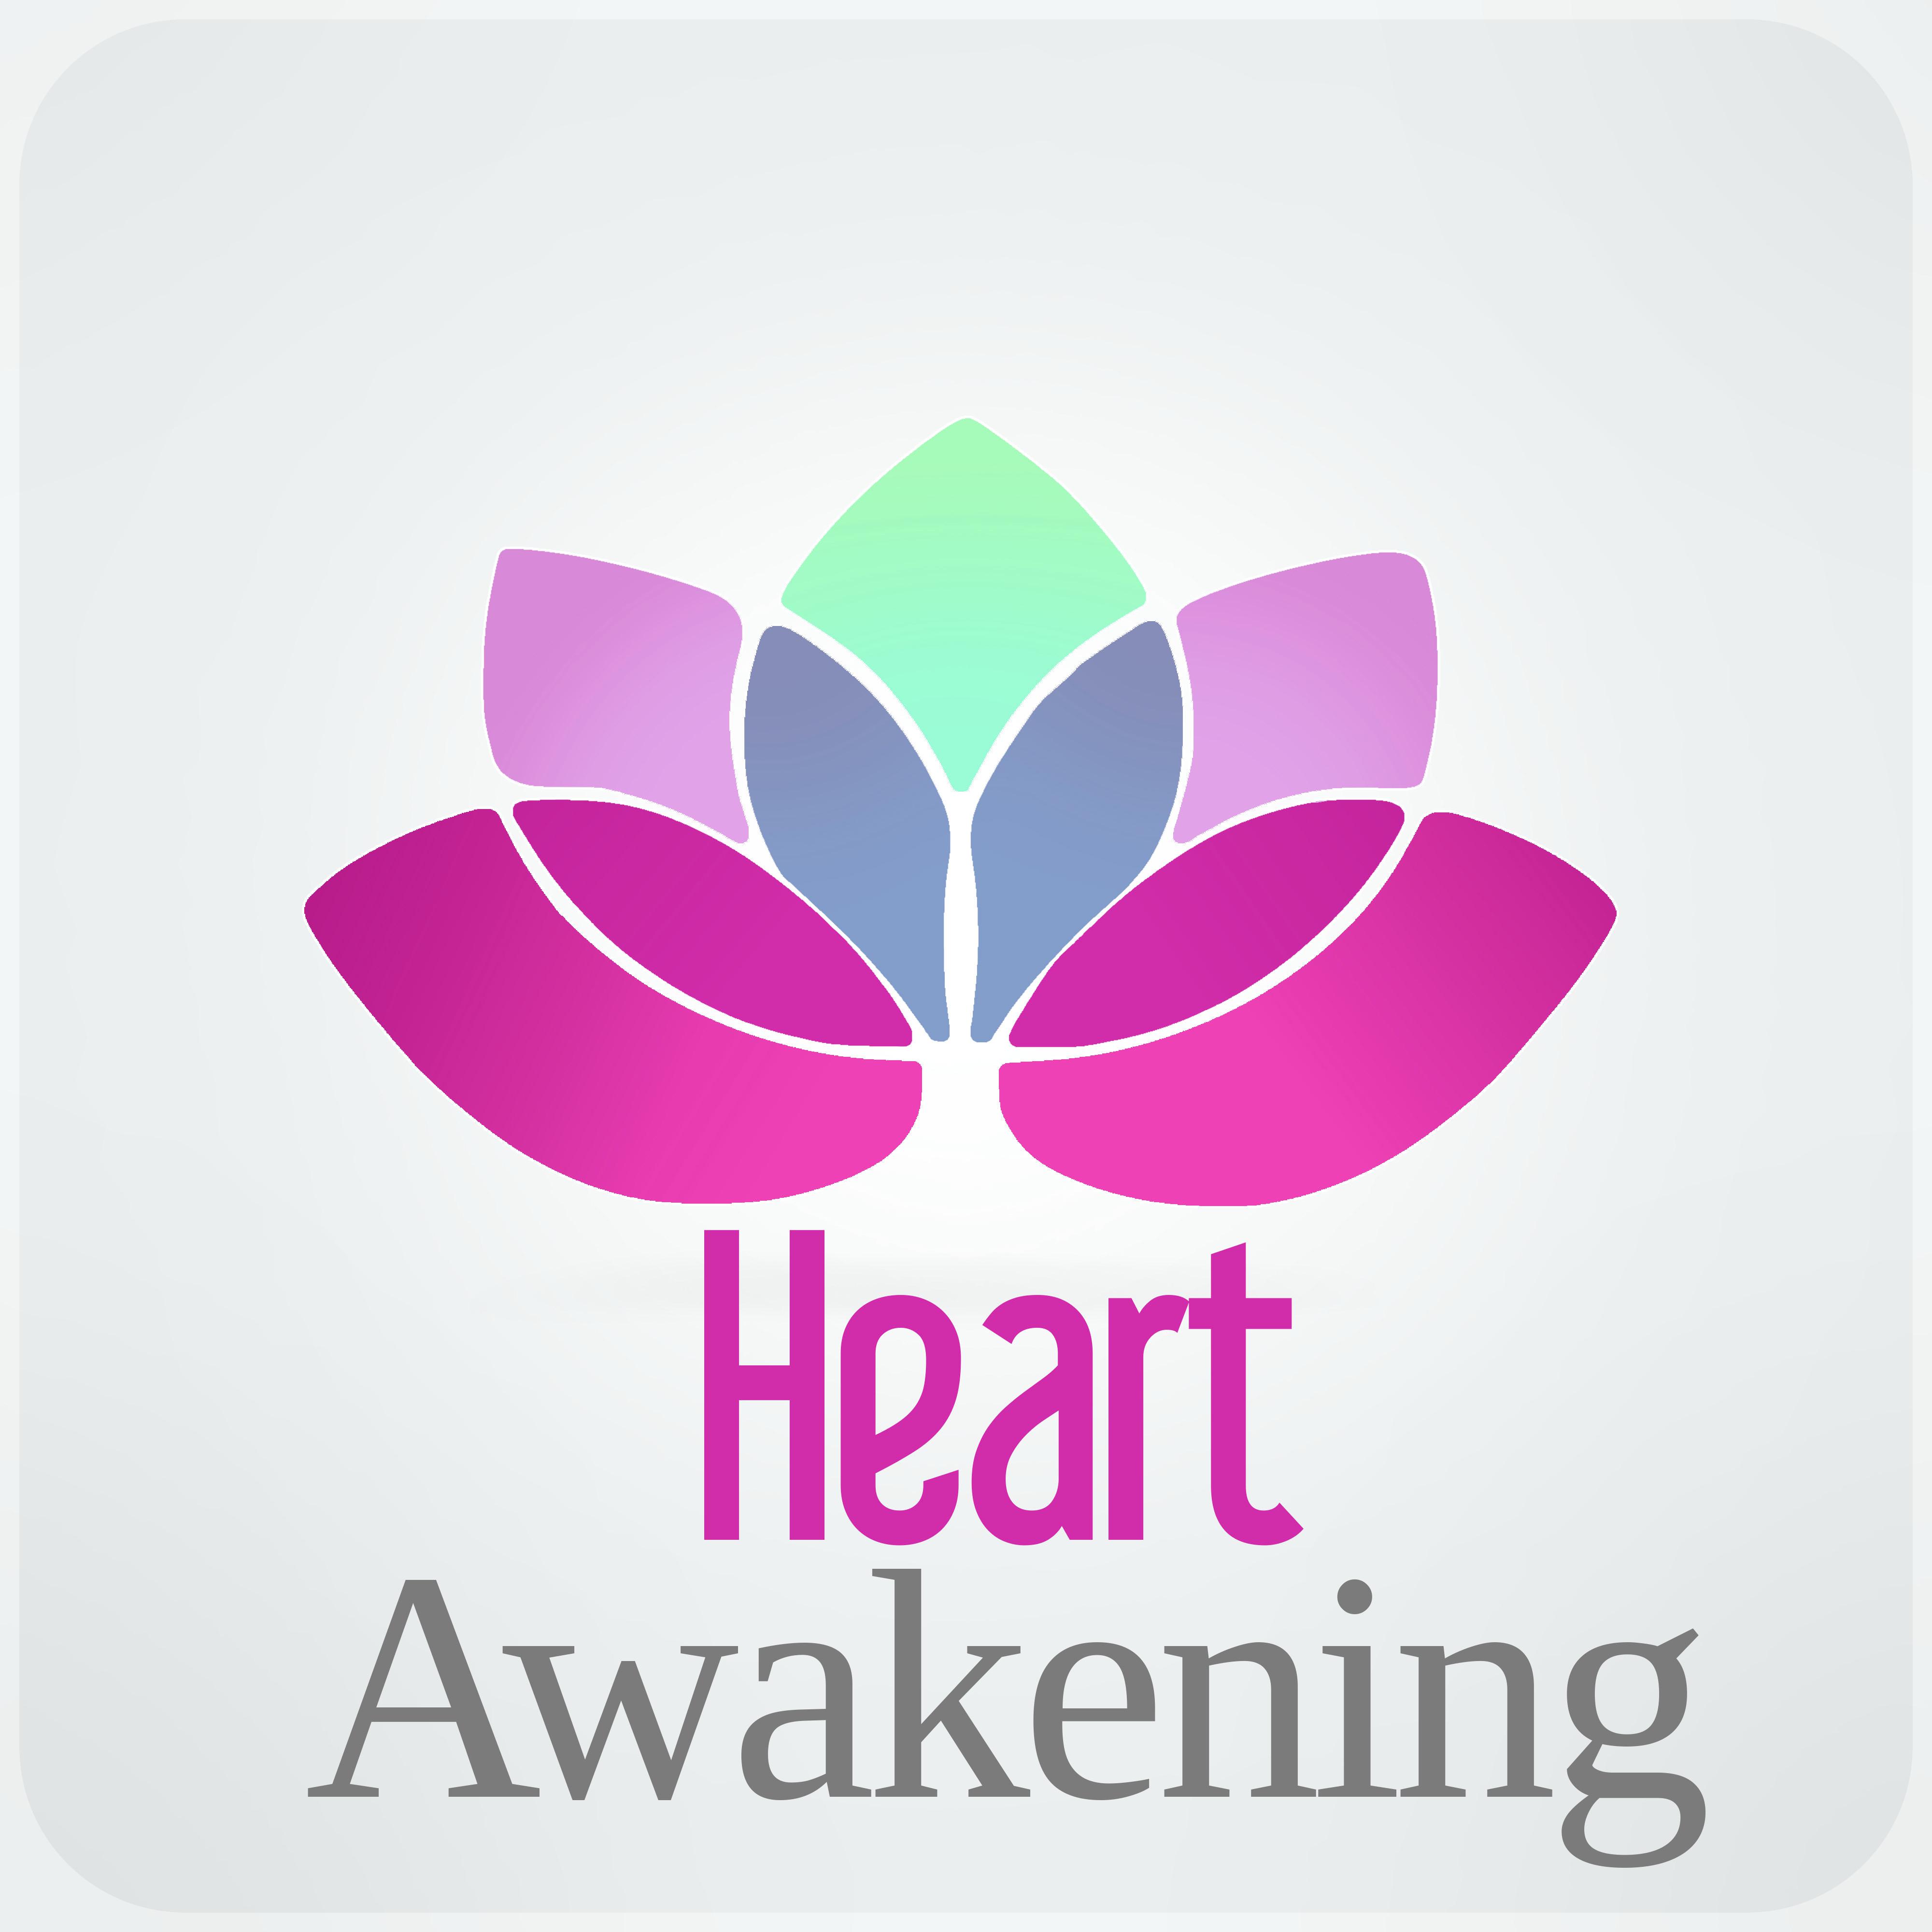 Heart Awakening - Reiki Healing, Emotional Health, Mindfulness Exercises, Relaxation Meditation